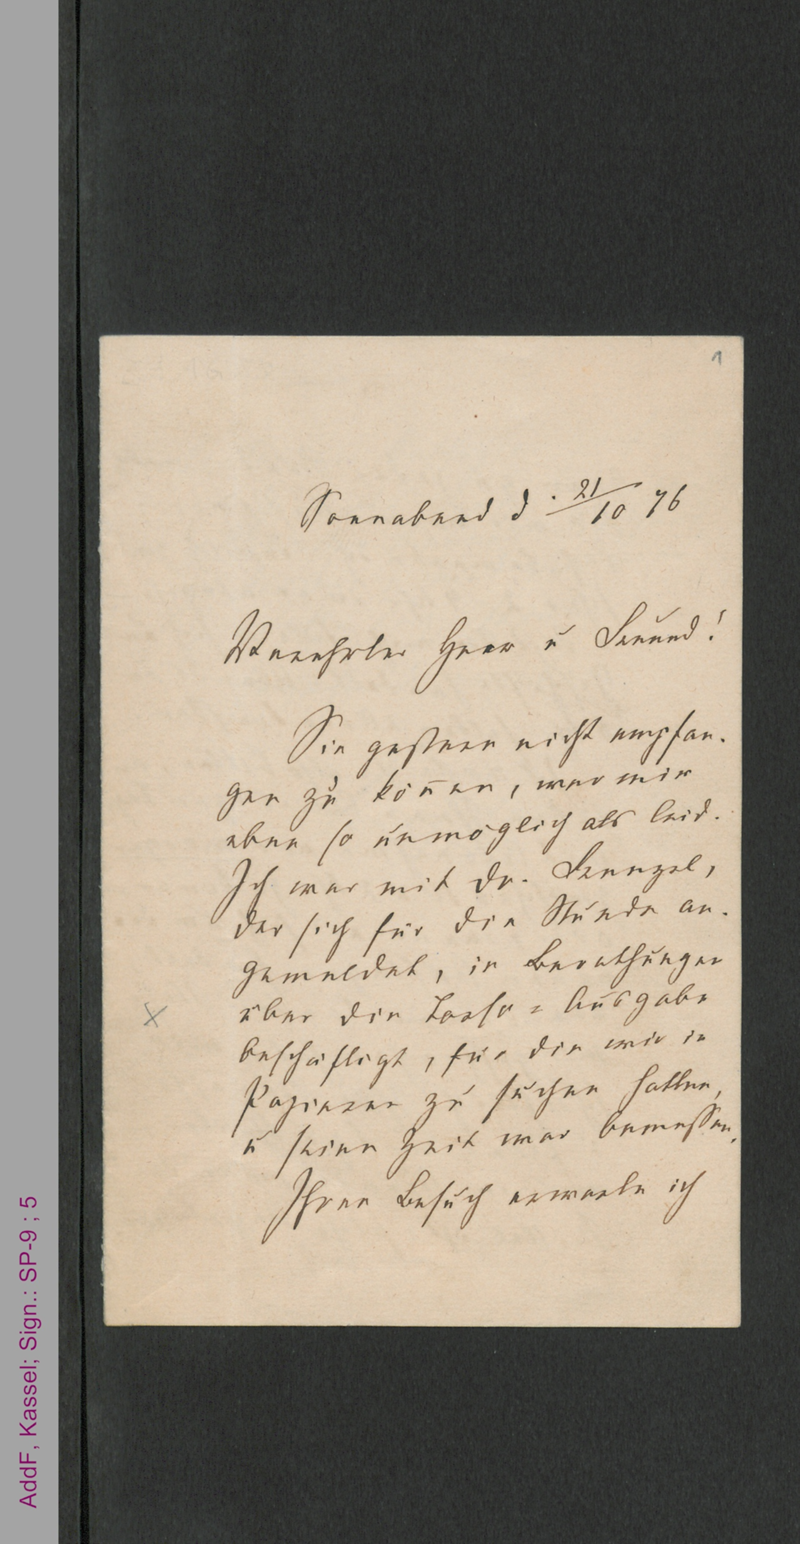 Brief von Fanny Lewald an Herrn Collin, hs.